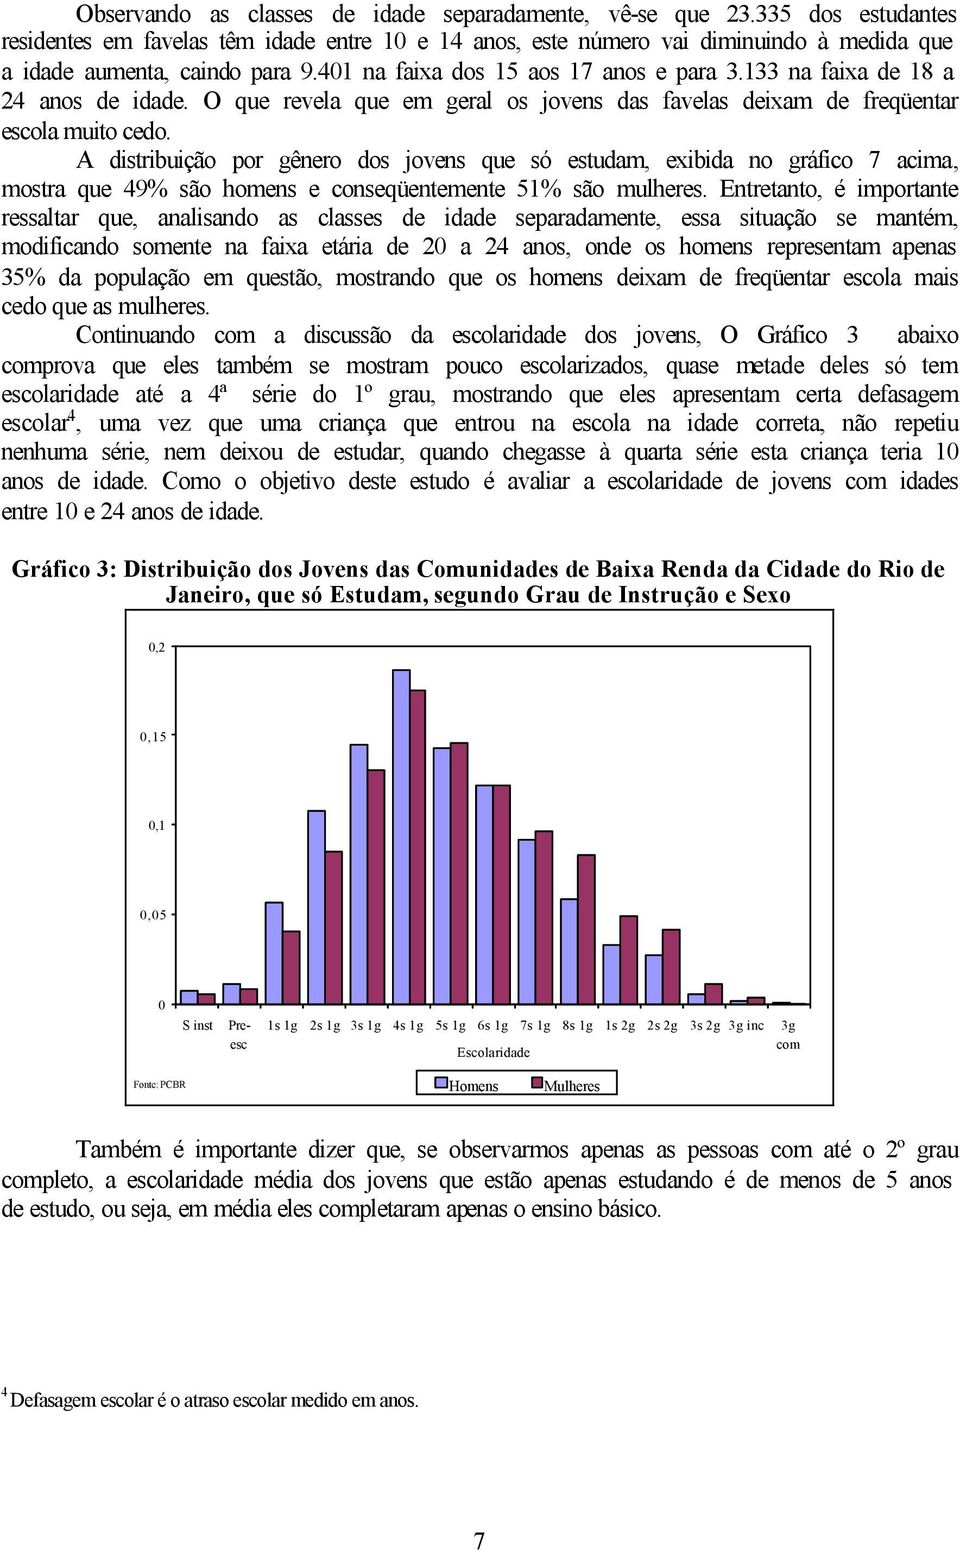 A dstrbução por gênero dos jovens que só estudam, exbda no gráfco 7 acma, mostra que 49% são homens e conseqüentemente 5% são mulheres.